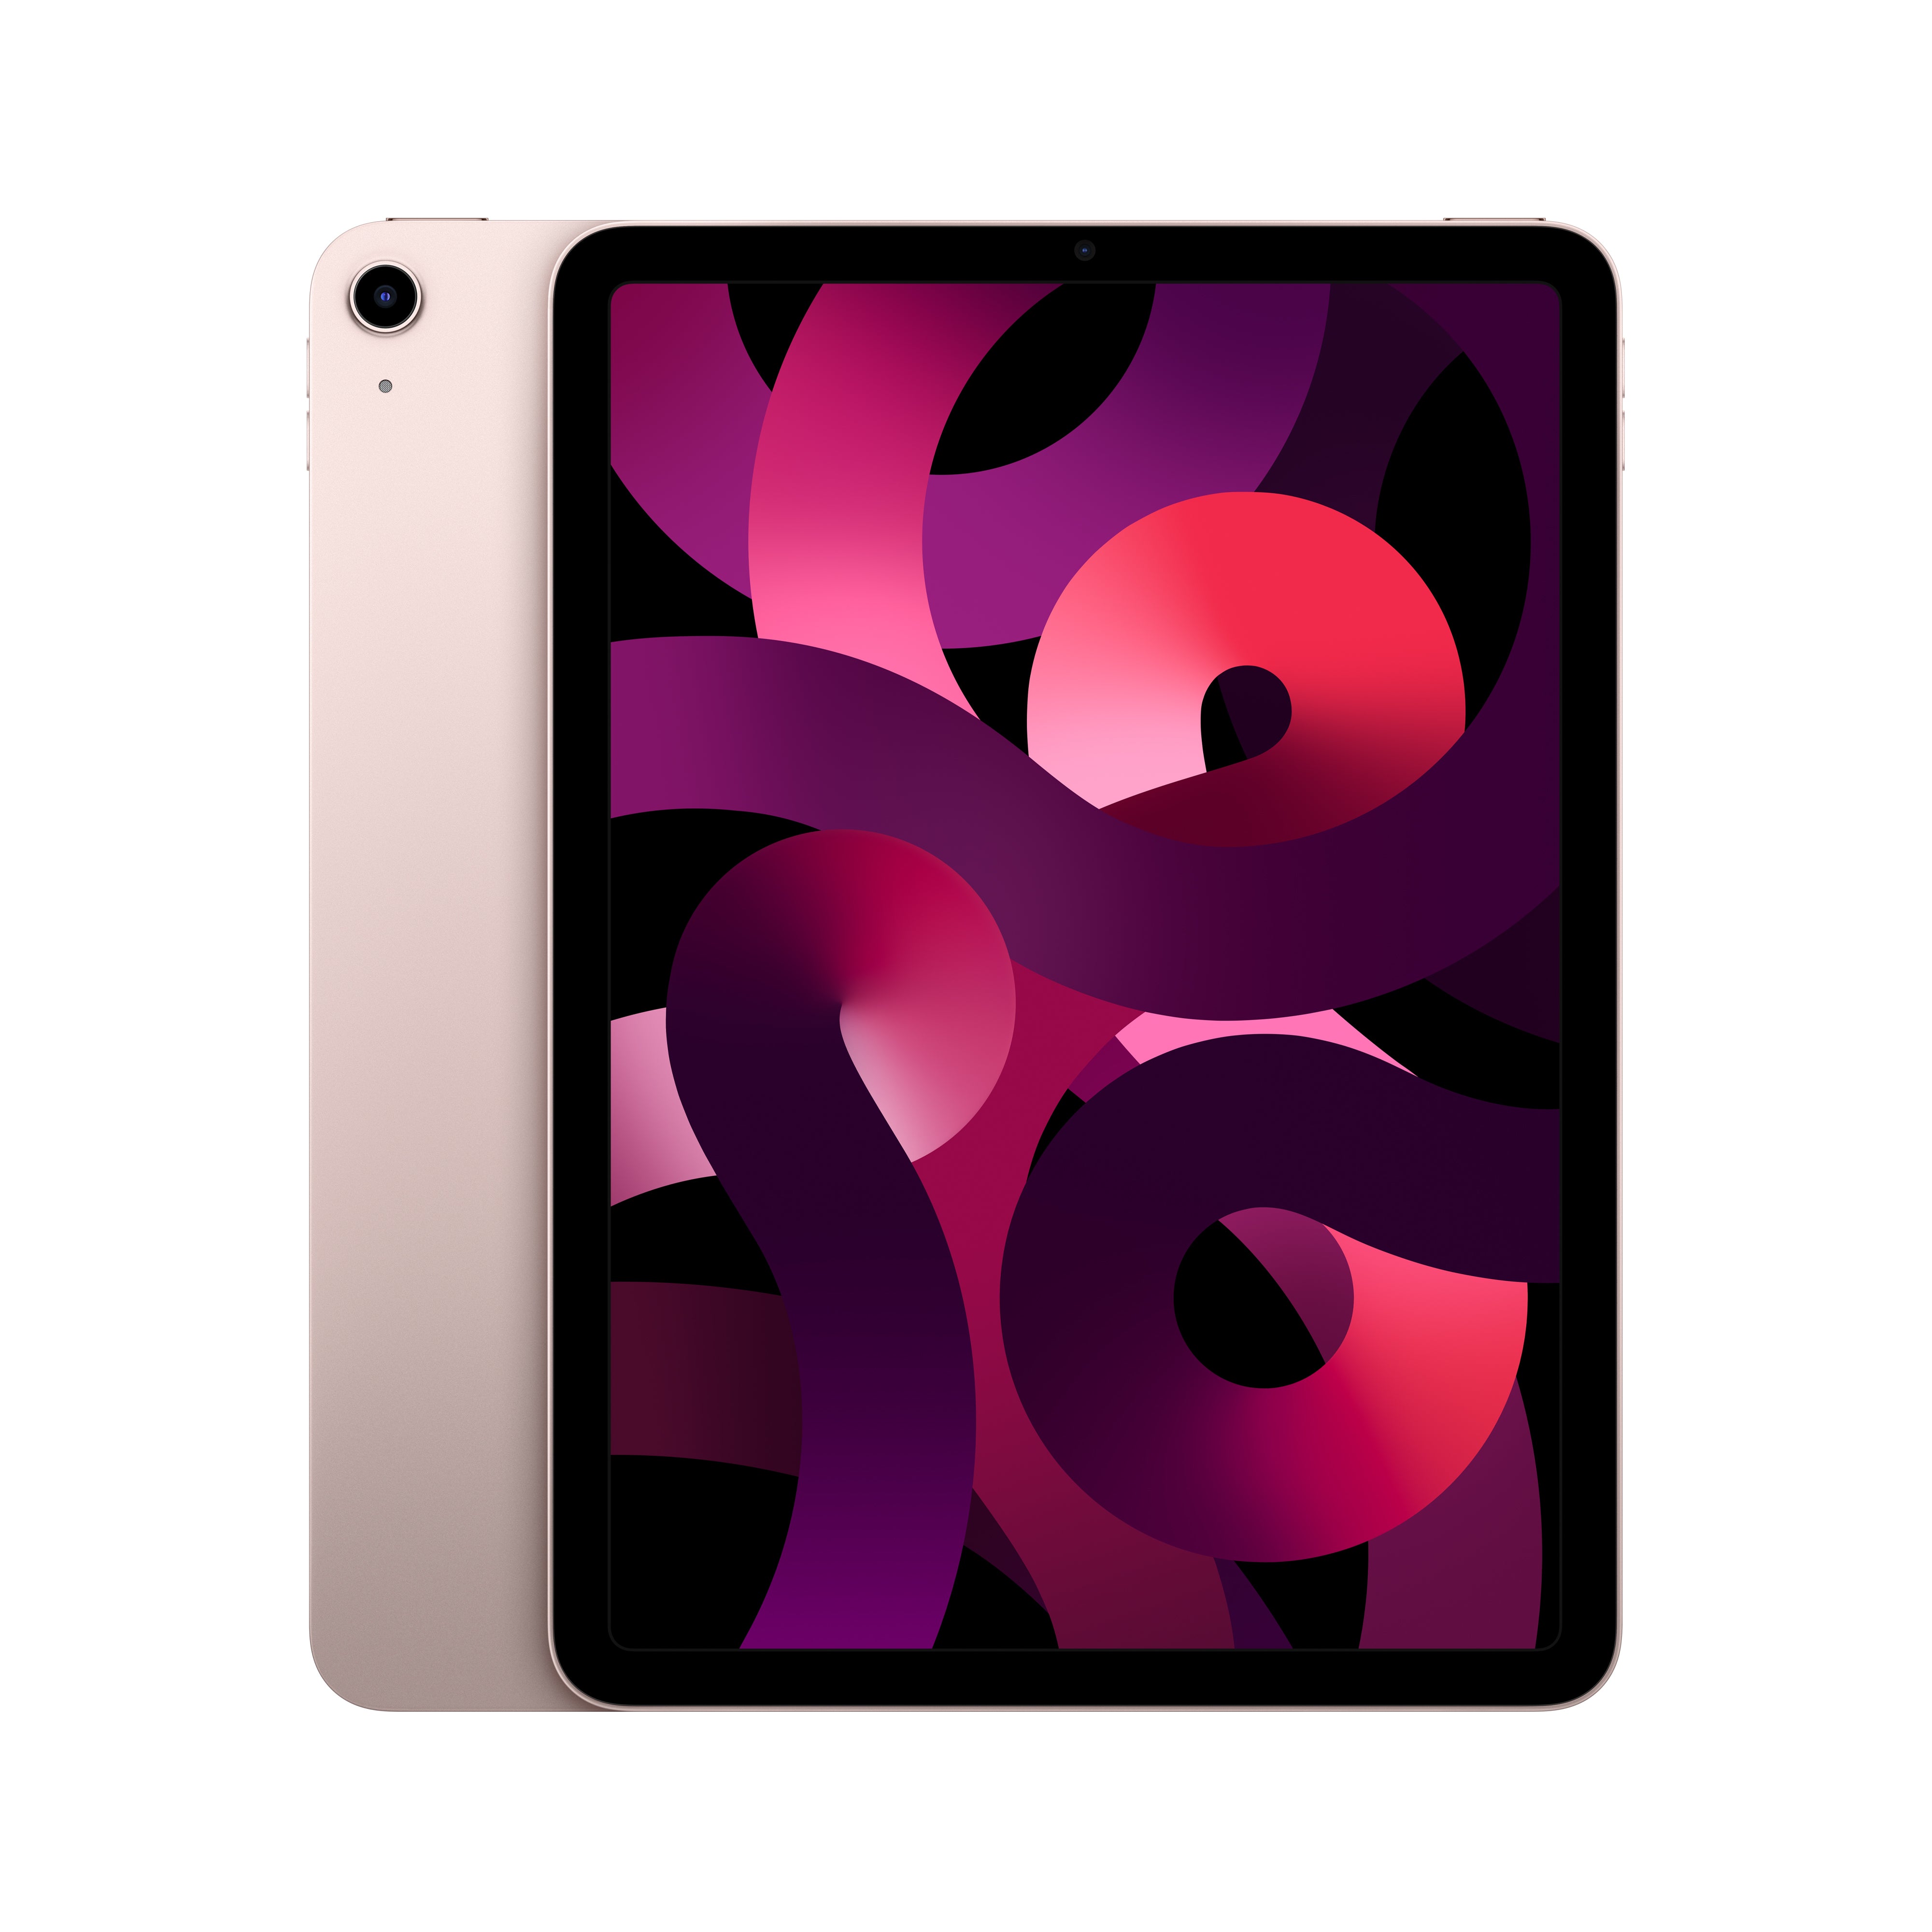 iPad Air 5th Generation WiFi 64GB - Pink